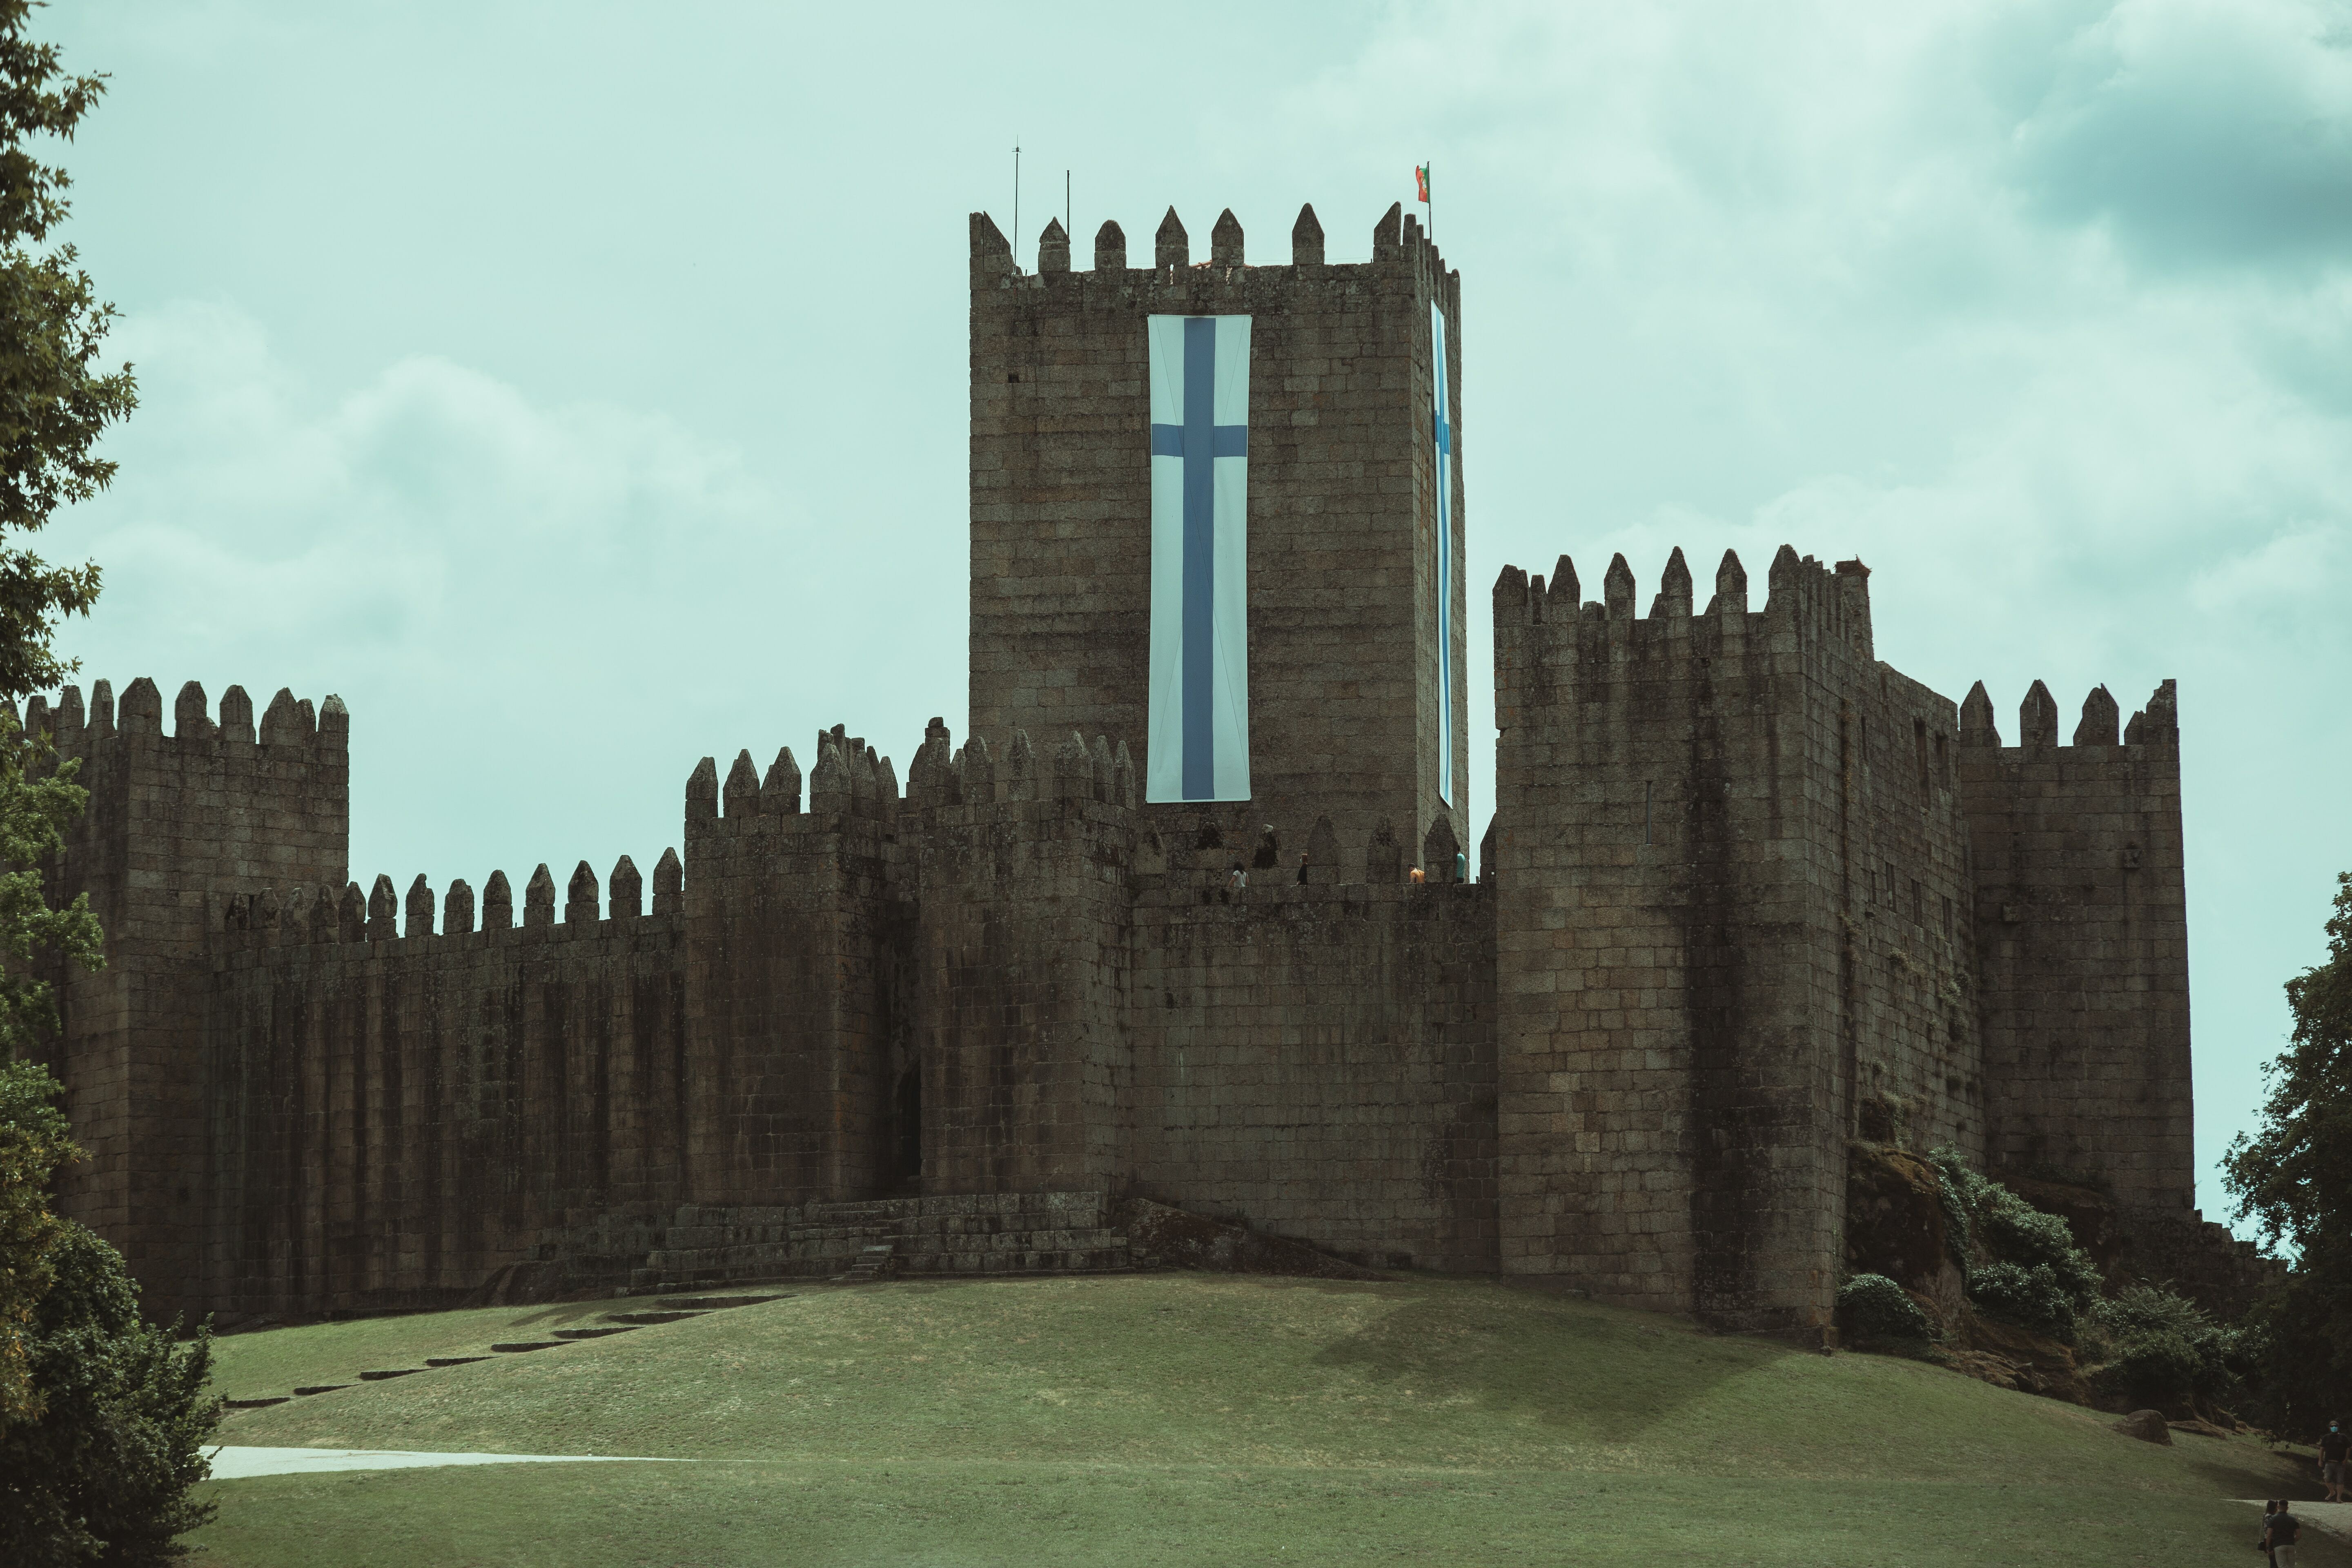 Guimarães medieval castle